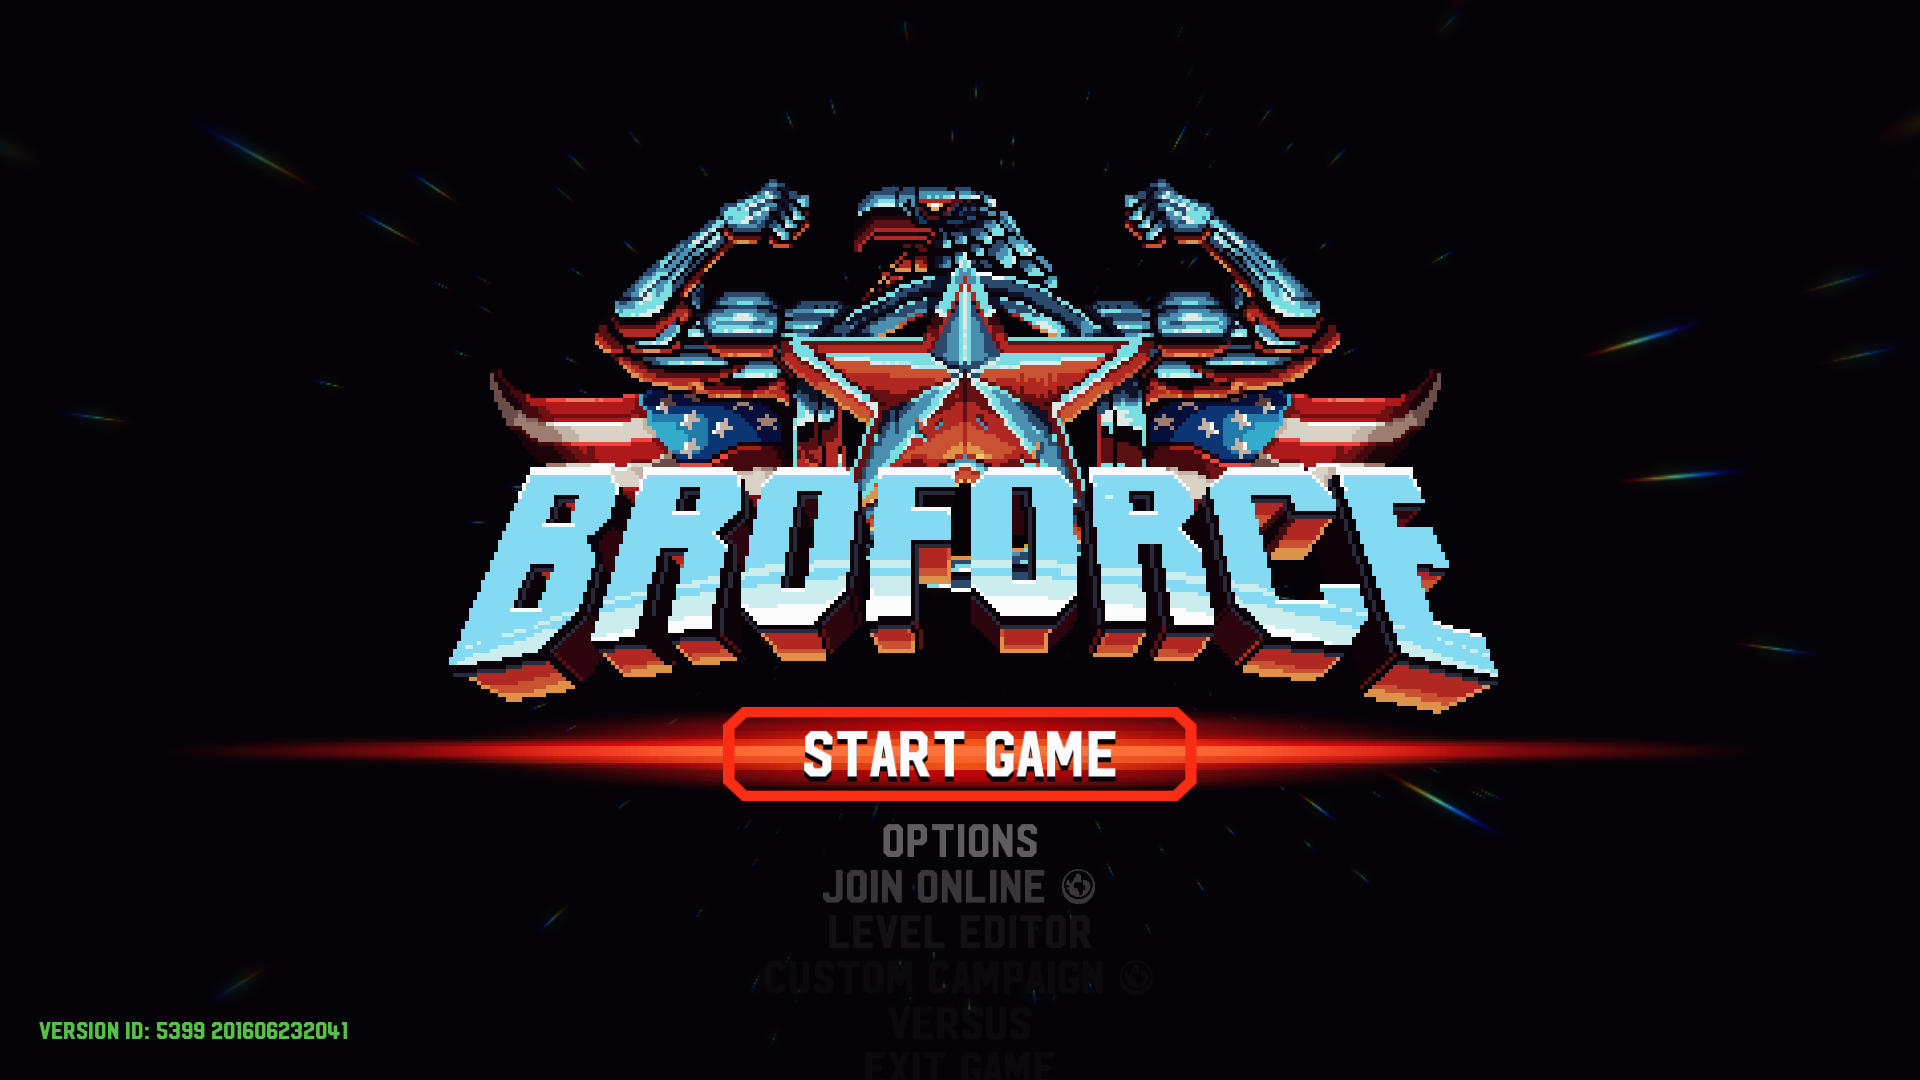 [レビュー] Broforce - 2Dシューティングムキムキマッチョアクション